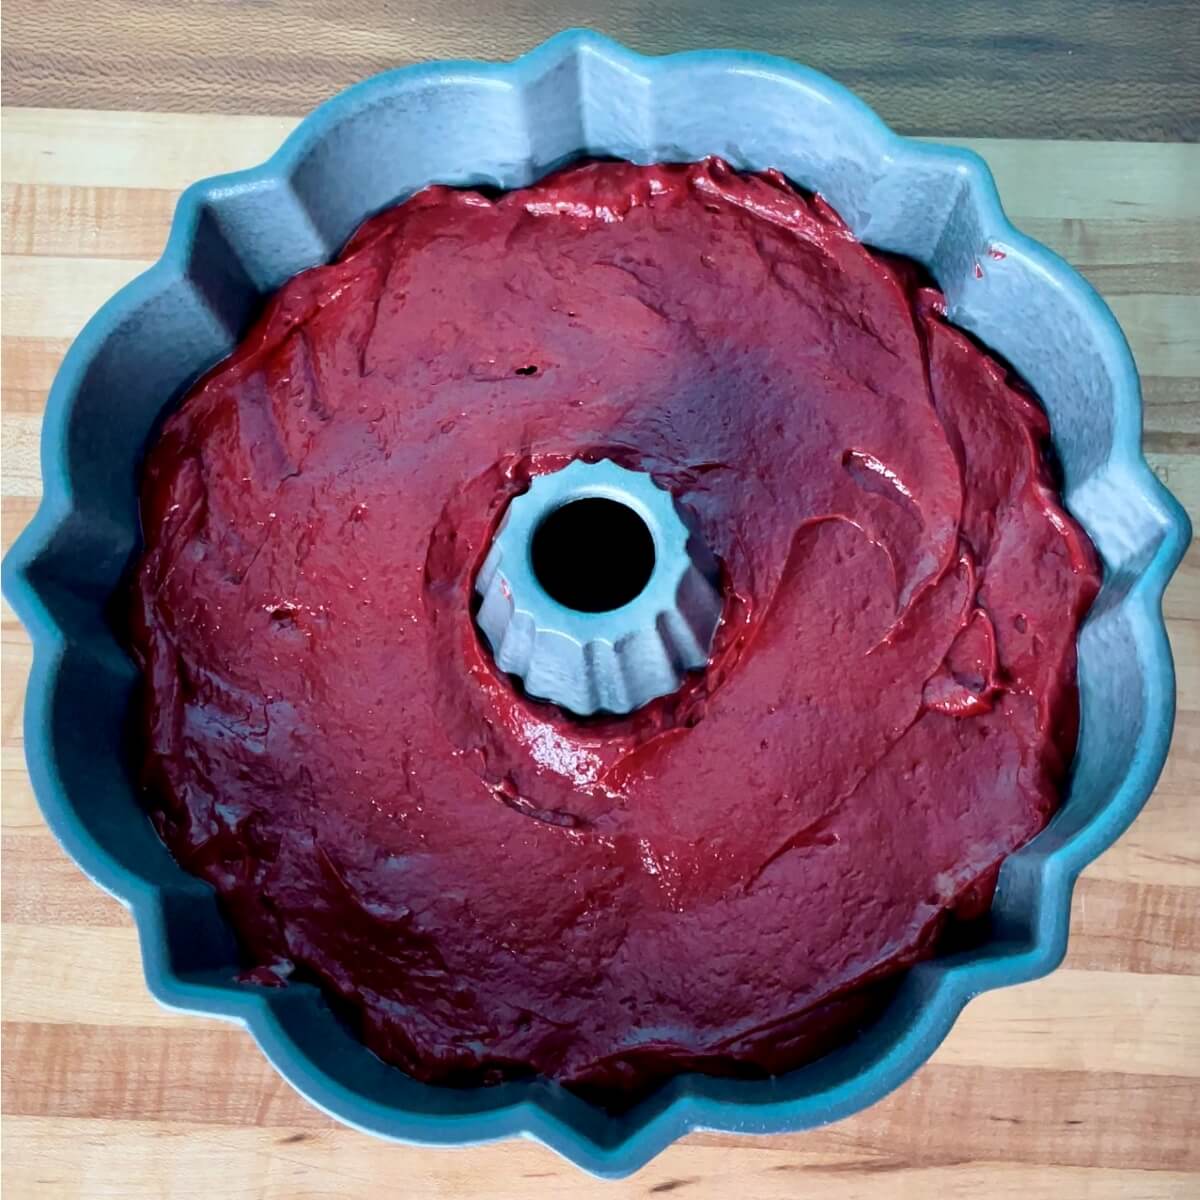 How to Make Red Velvet Bundt Cake in the Instant Pot